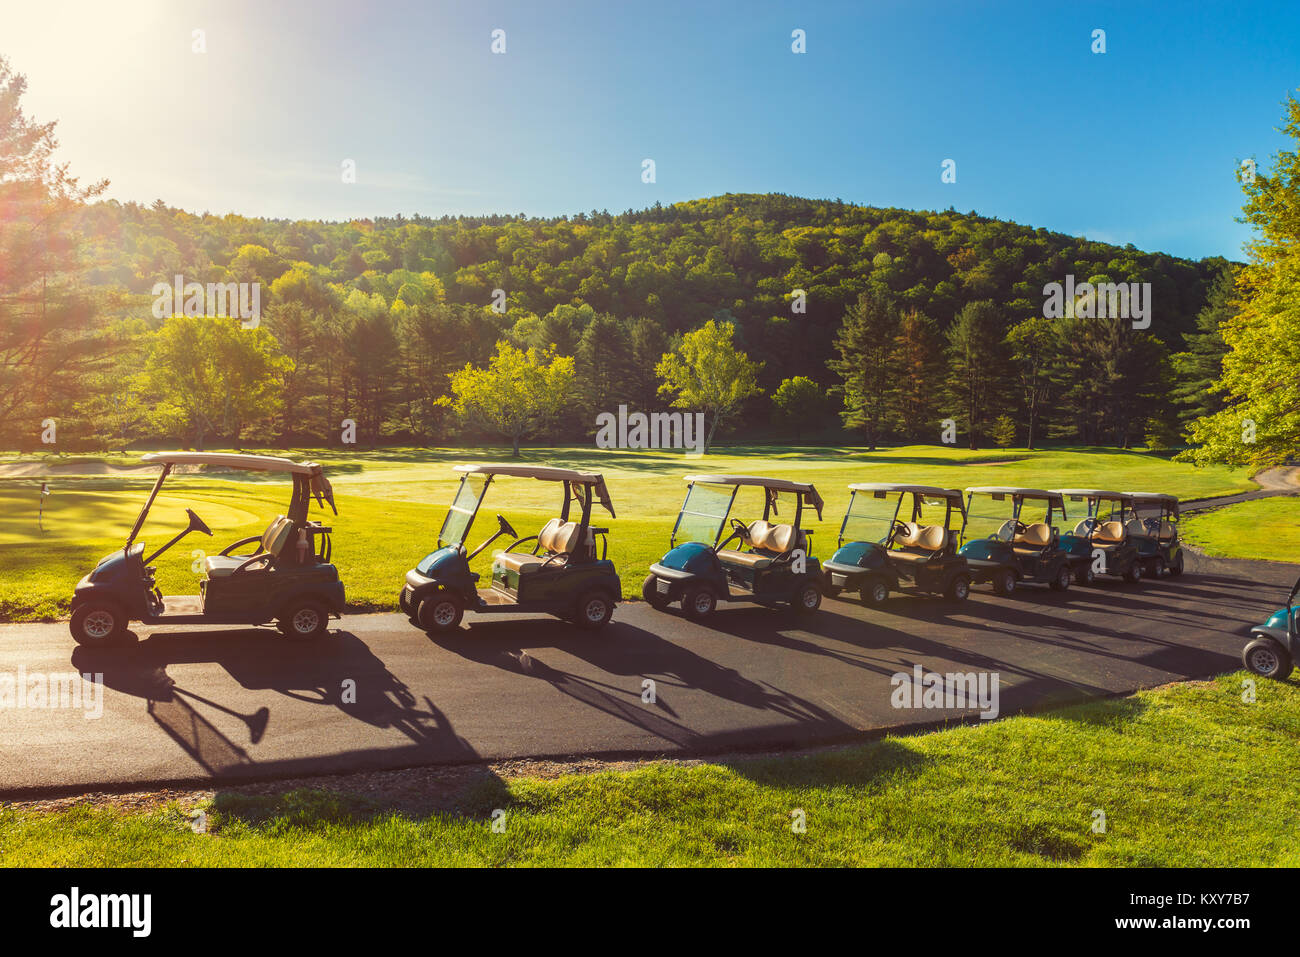 Se alinearon los carritos de golf en el campo de Golf Foto de stock